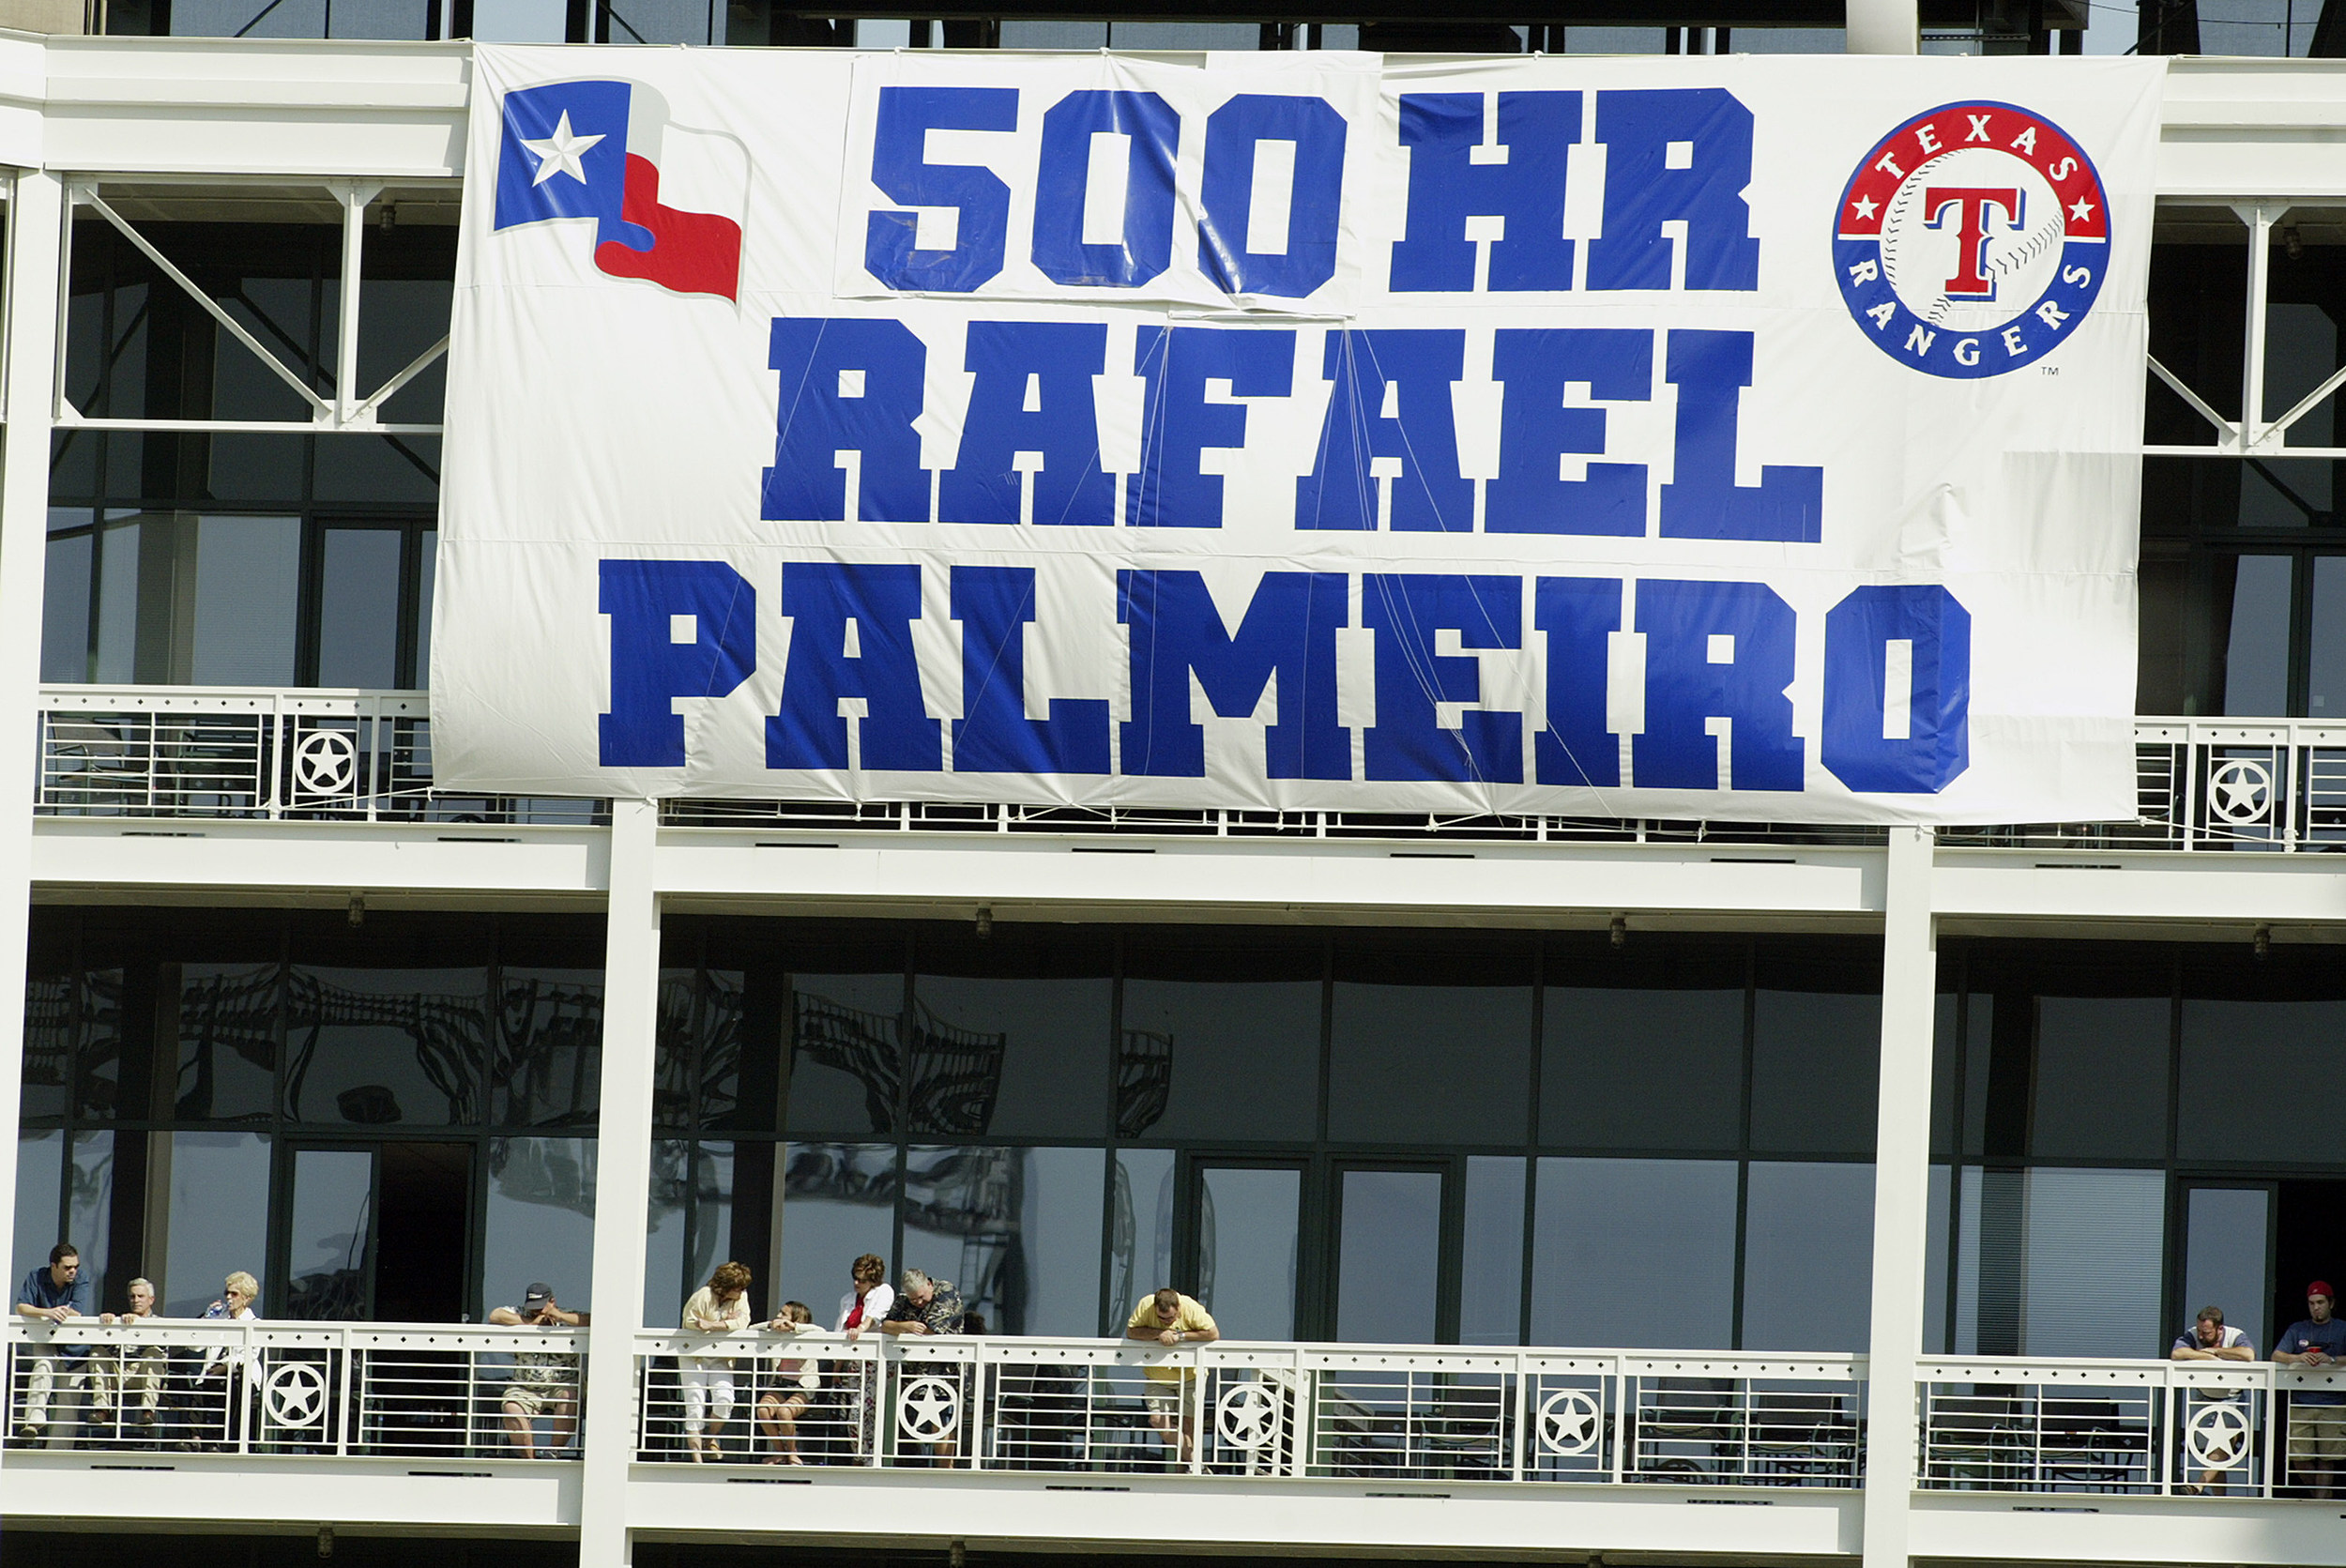 Palmeiro hits 500th career home run